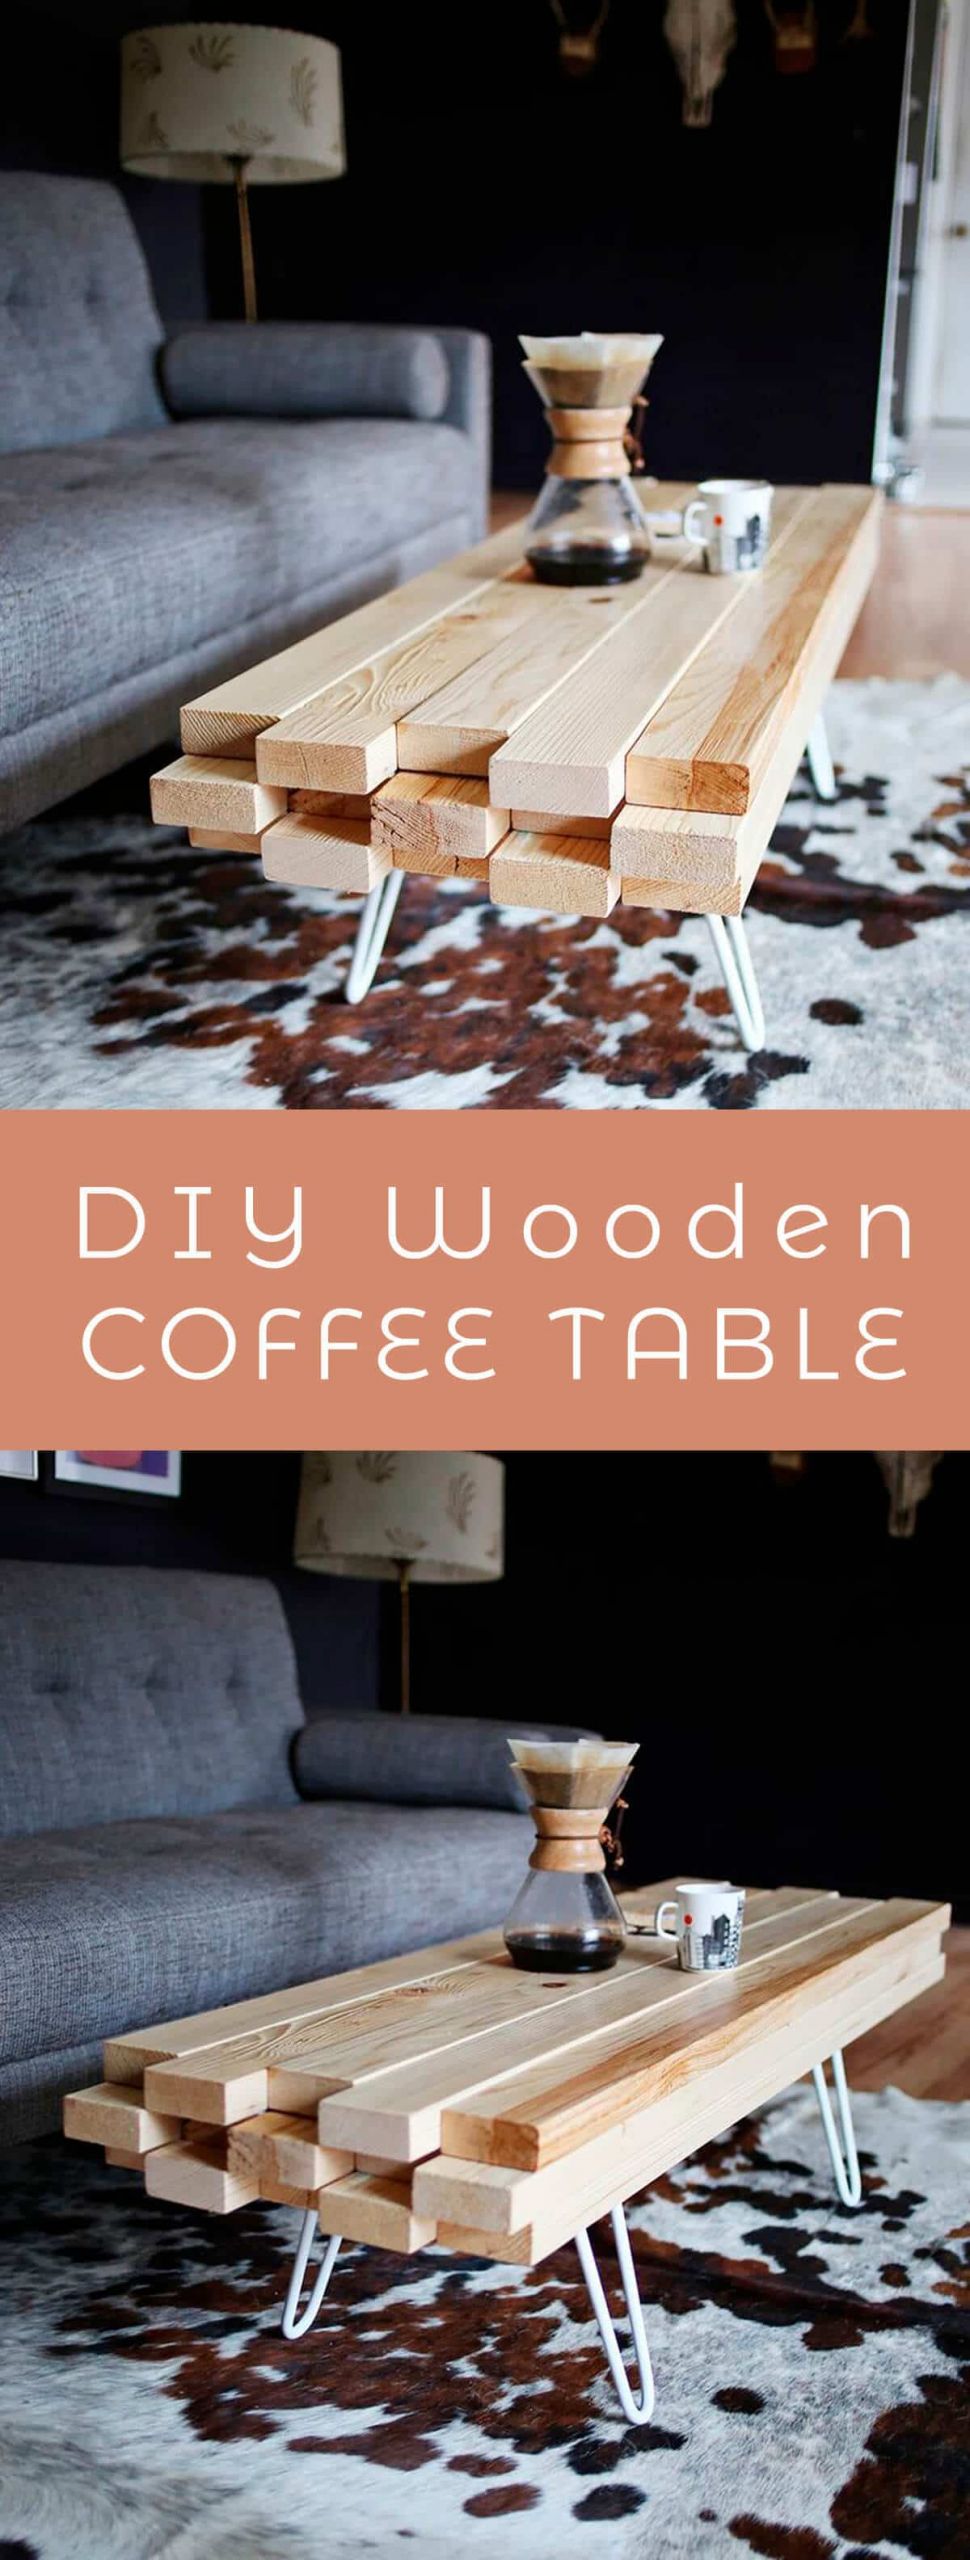 DIY Wooden Coffee Table
 DIY Wooden Coffee Table A Beautiful Mess